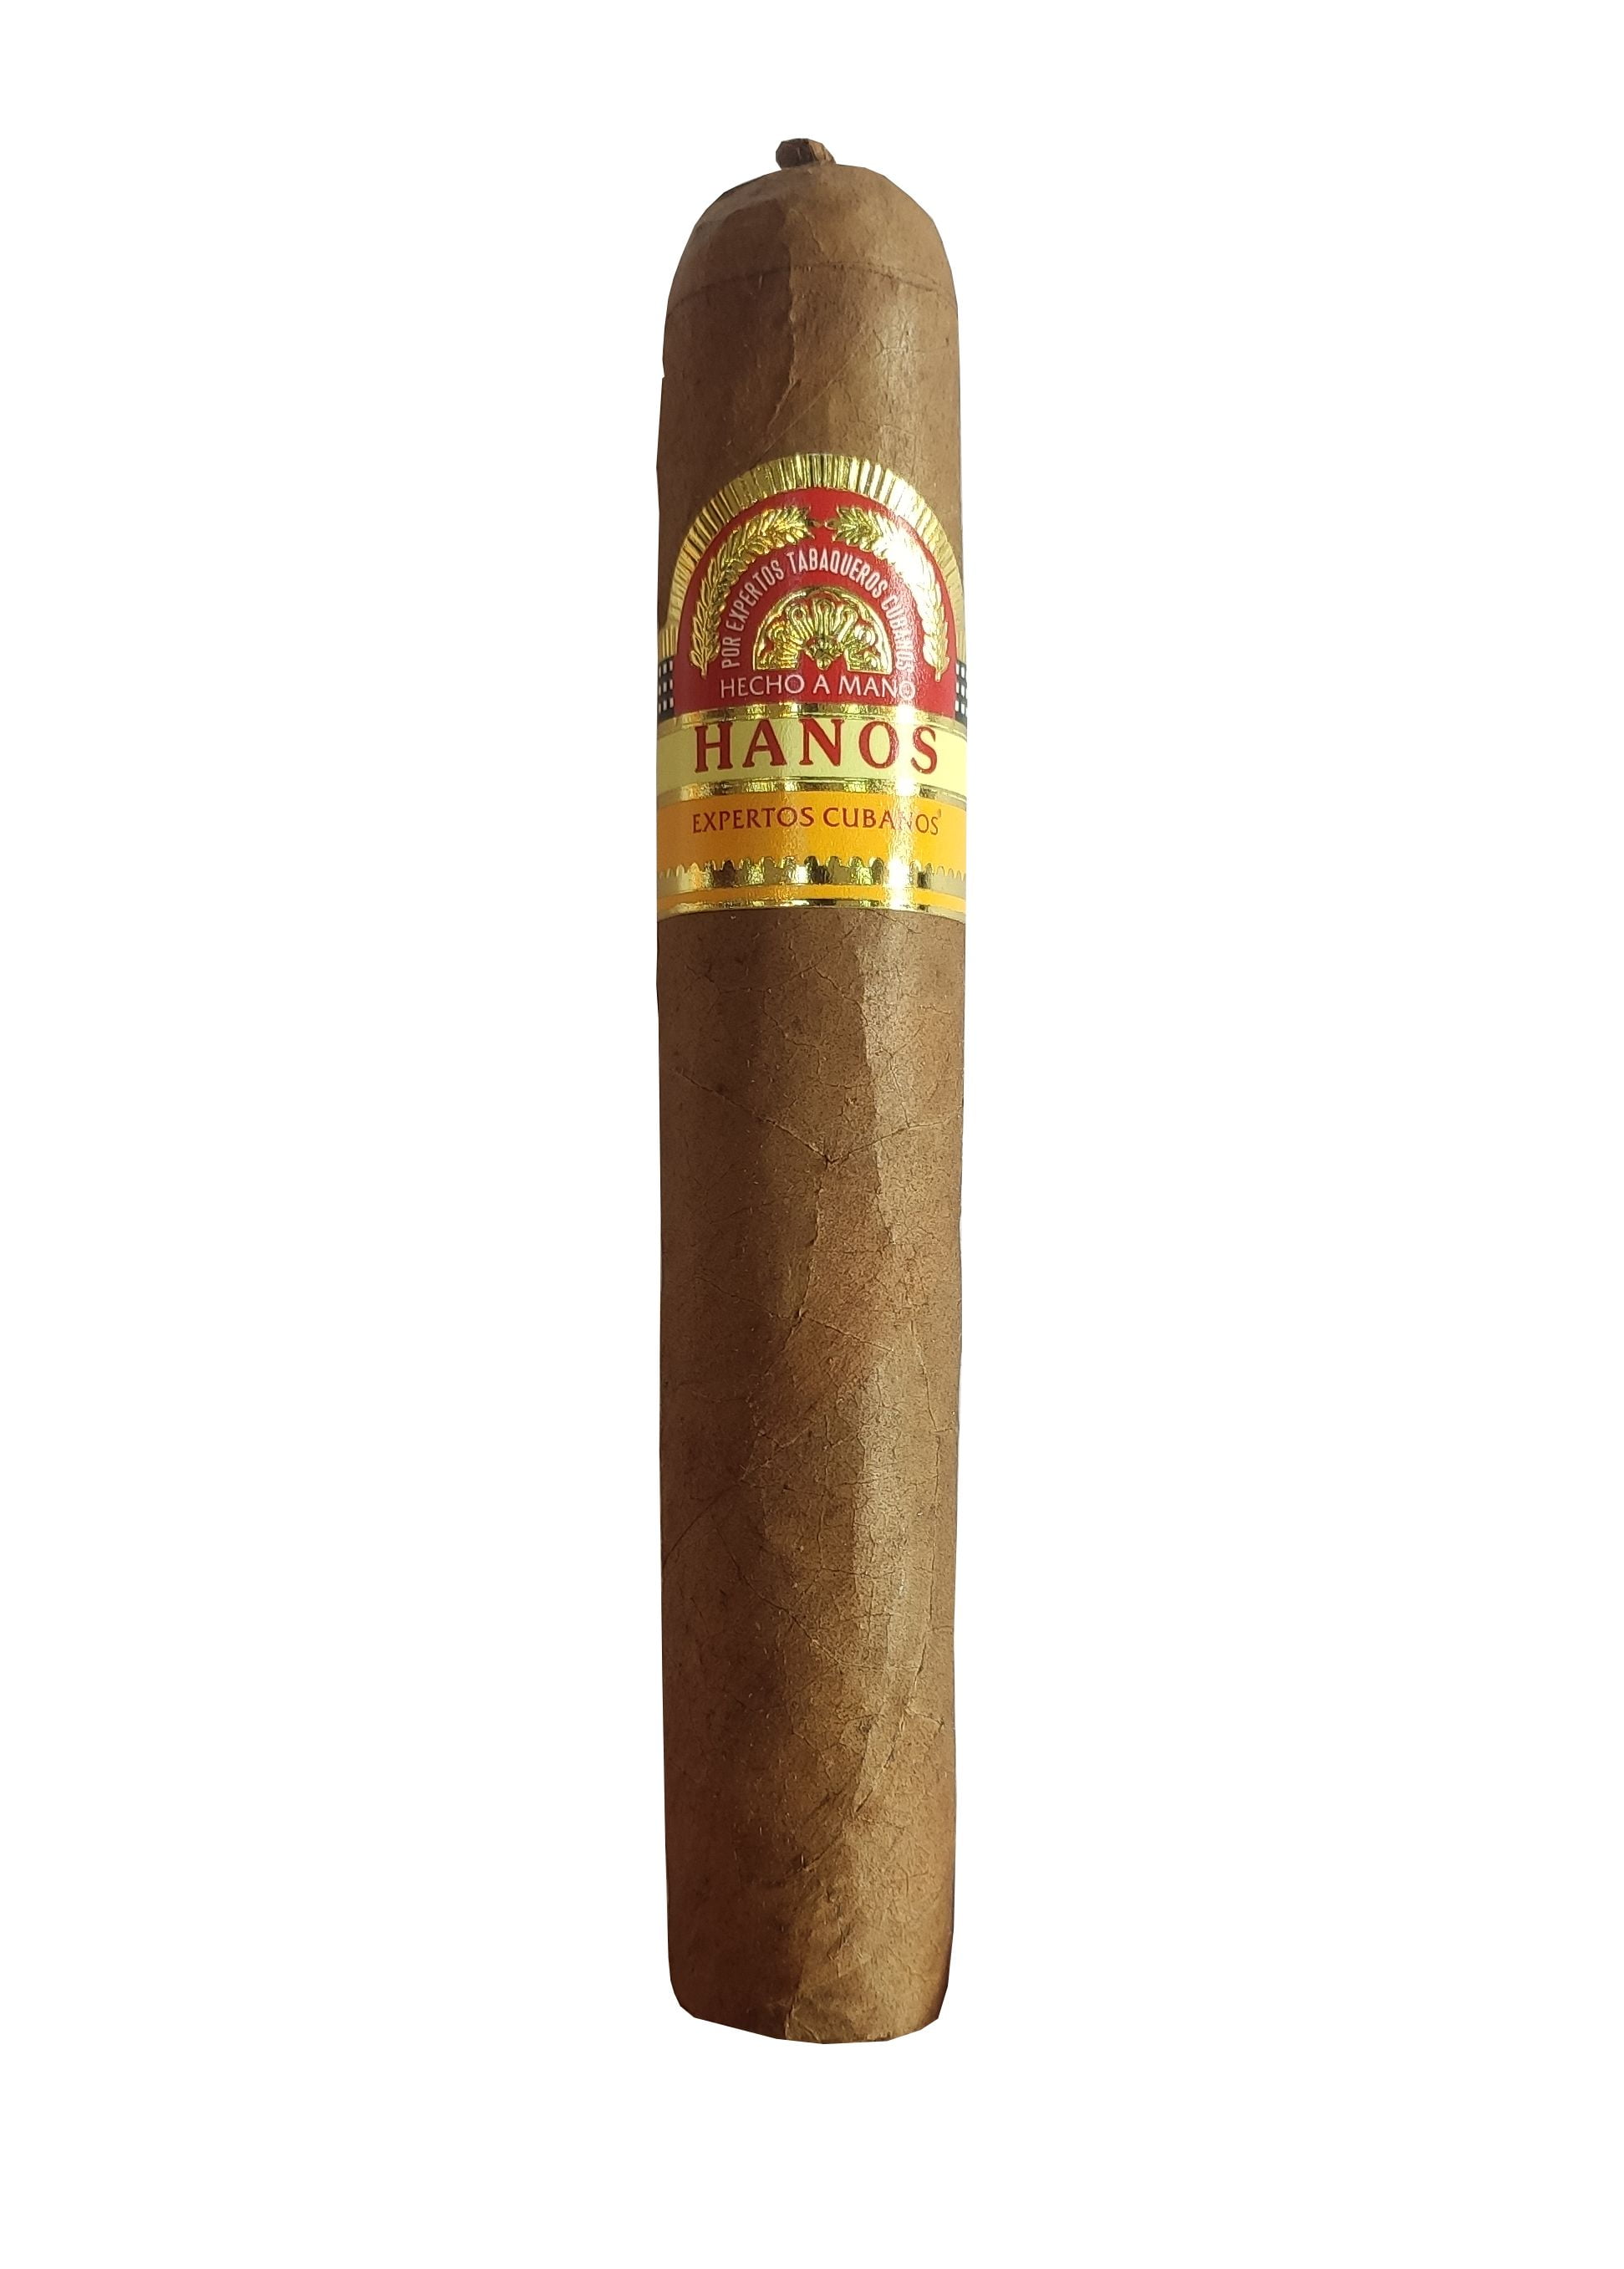 Cigar Hanos 52 (Hộp gỗ 10 điếu)